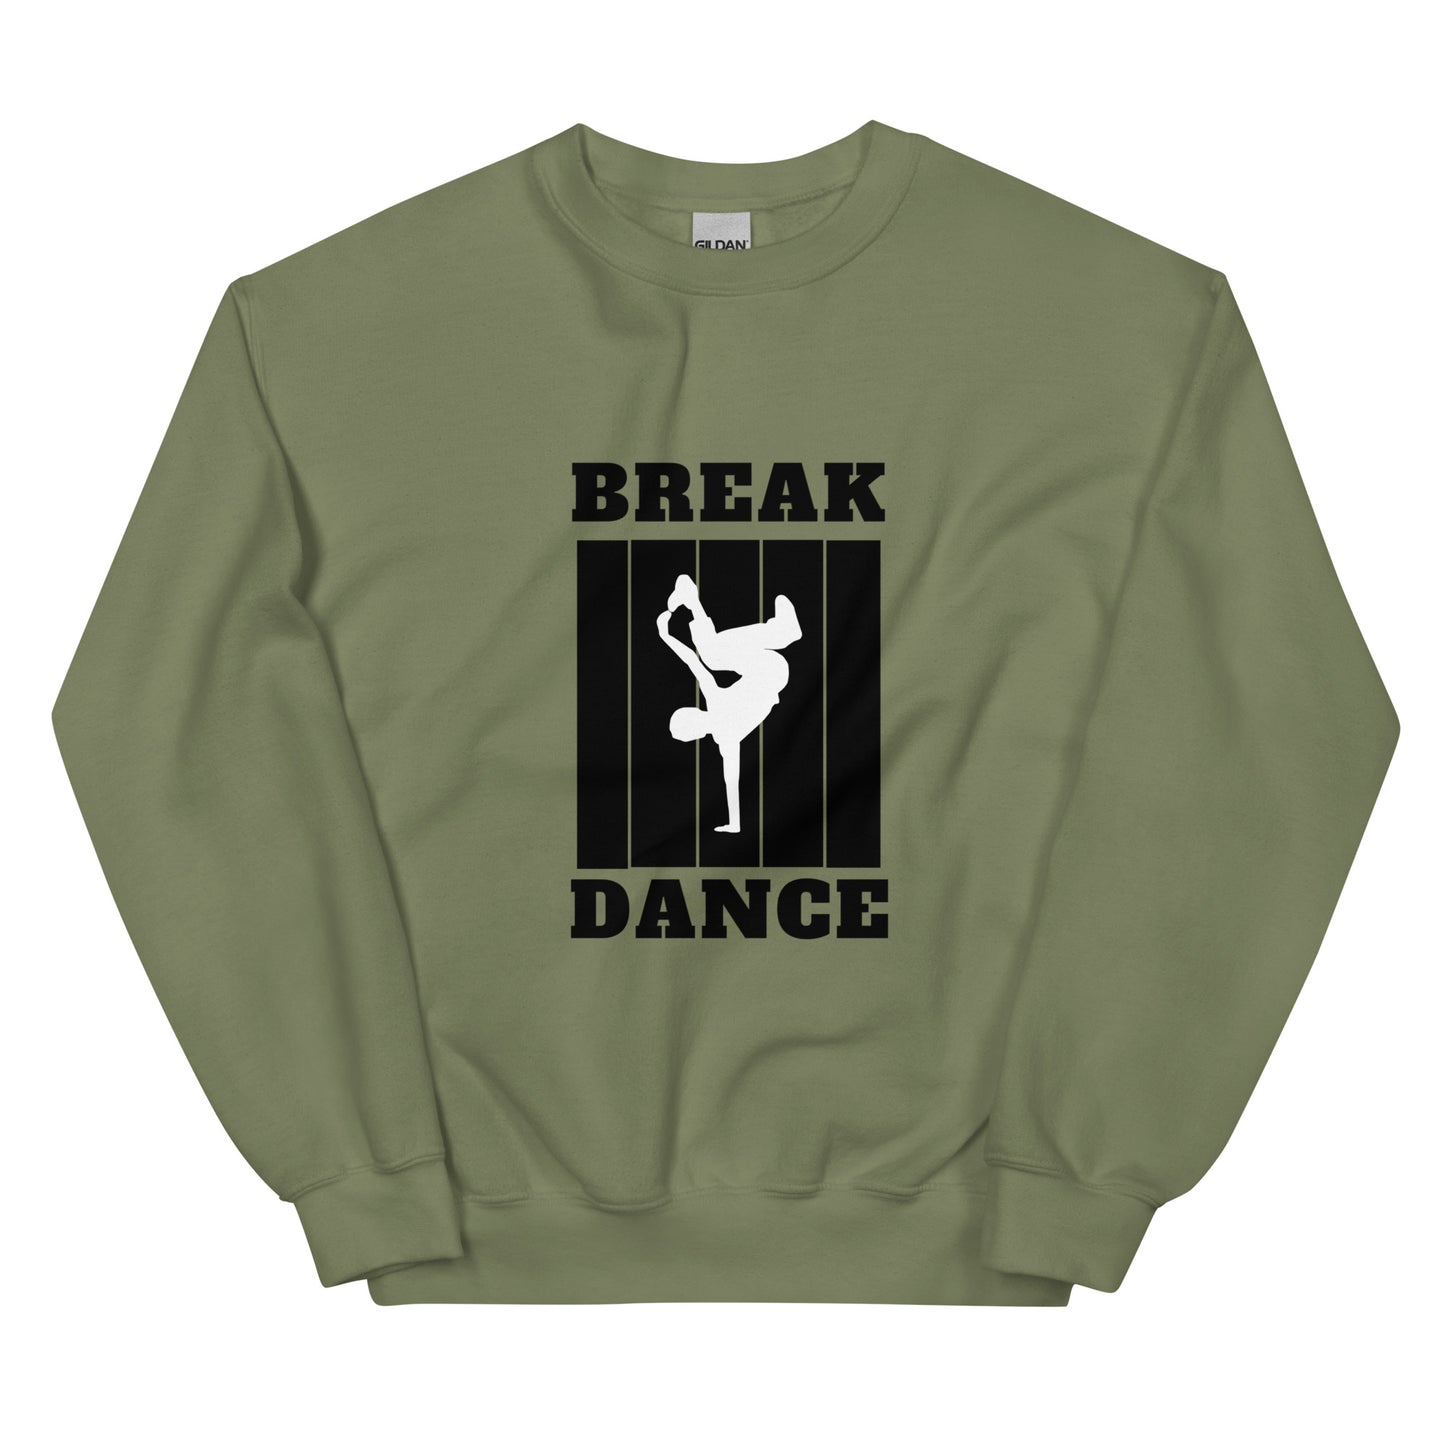 BREAK DANCE - Unisex Sweatshirt